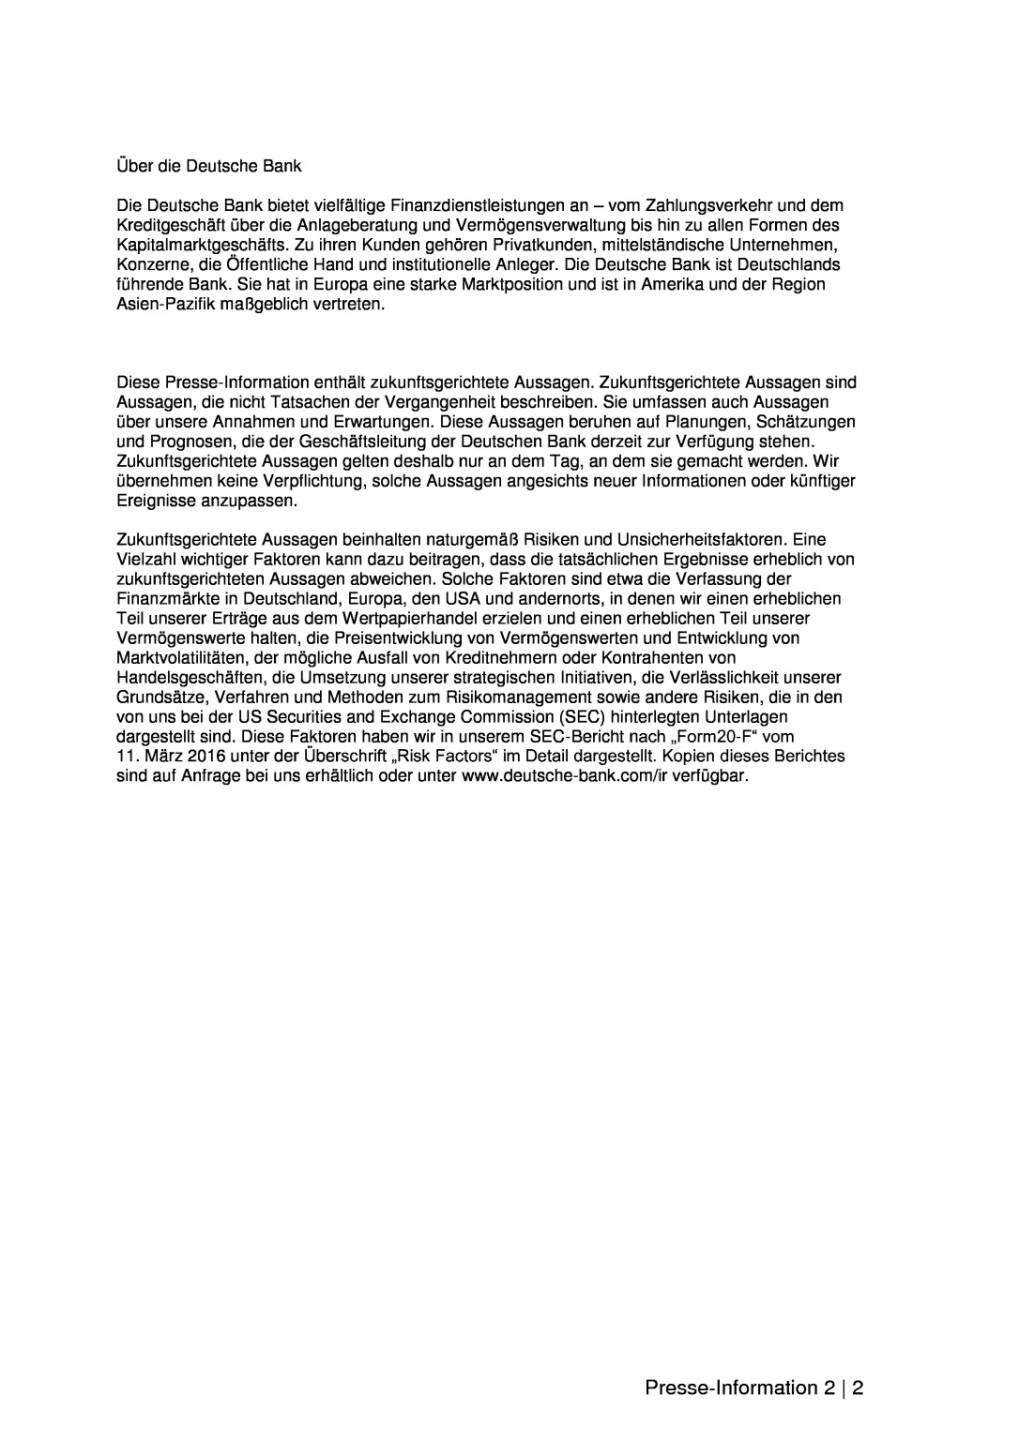 Deutsche Bank: Verhandlungen mit US-Justizministerium zu hypothekengedeckten Wertpapieren, Seite 2/2, komplettes Dokument unter http://boerse-social.com/static/uploads/file_1776_deutsche_bank_verhandlungen_mit_us-justizministerium_zu_hypothekengedeckten_wertpapieren.pdf